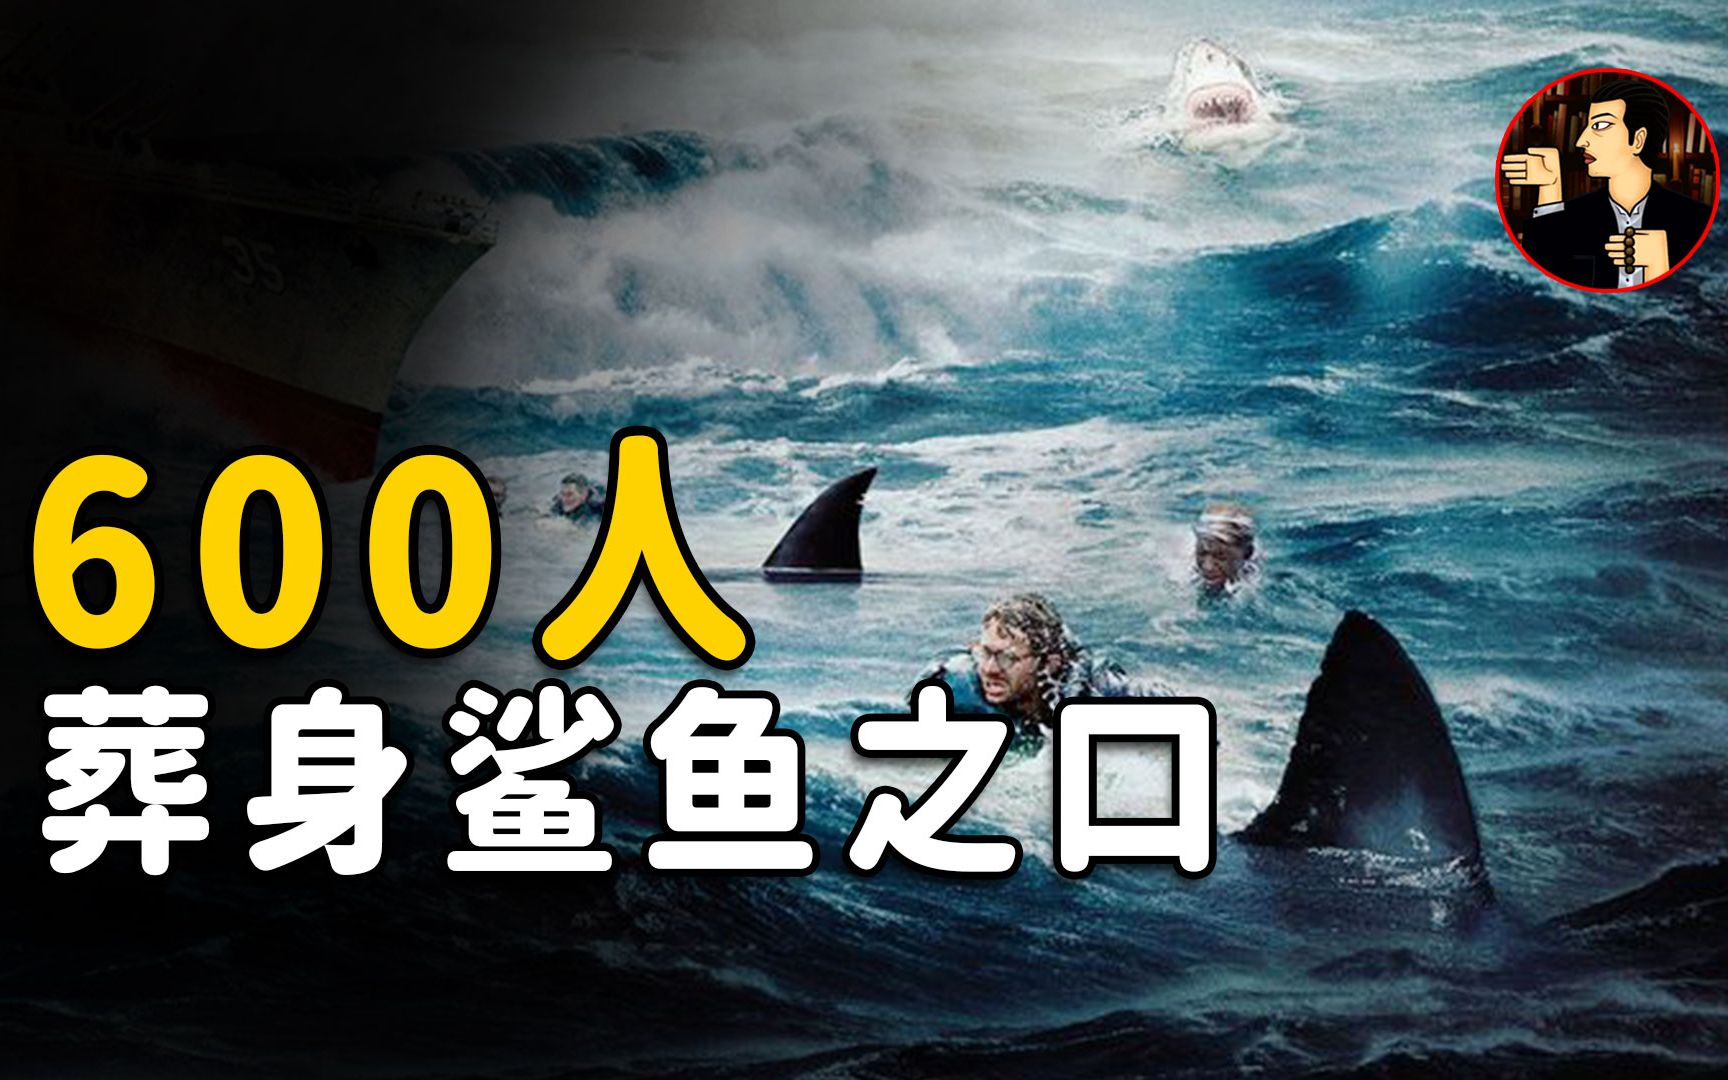 历史上最大规模鲨鱼吃人事件，1195人只有316人生还 | 奇闻观察室